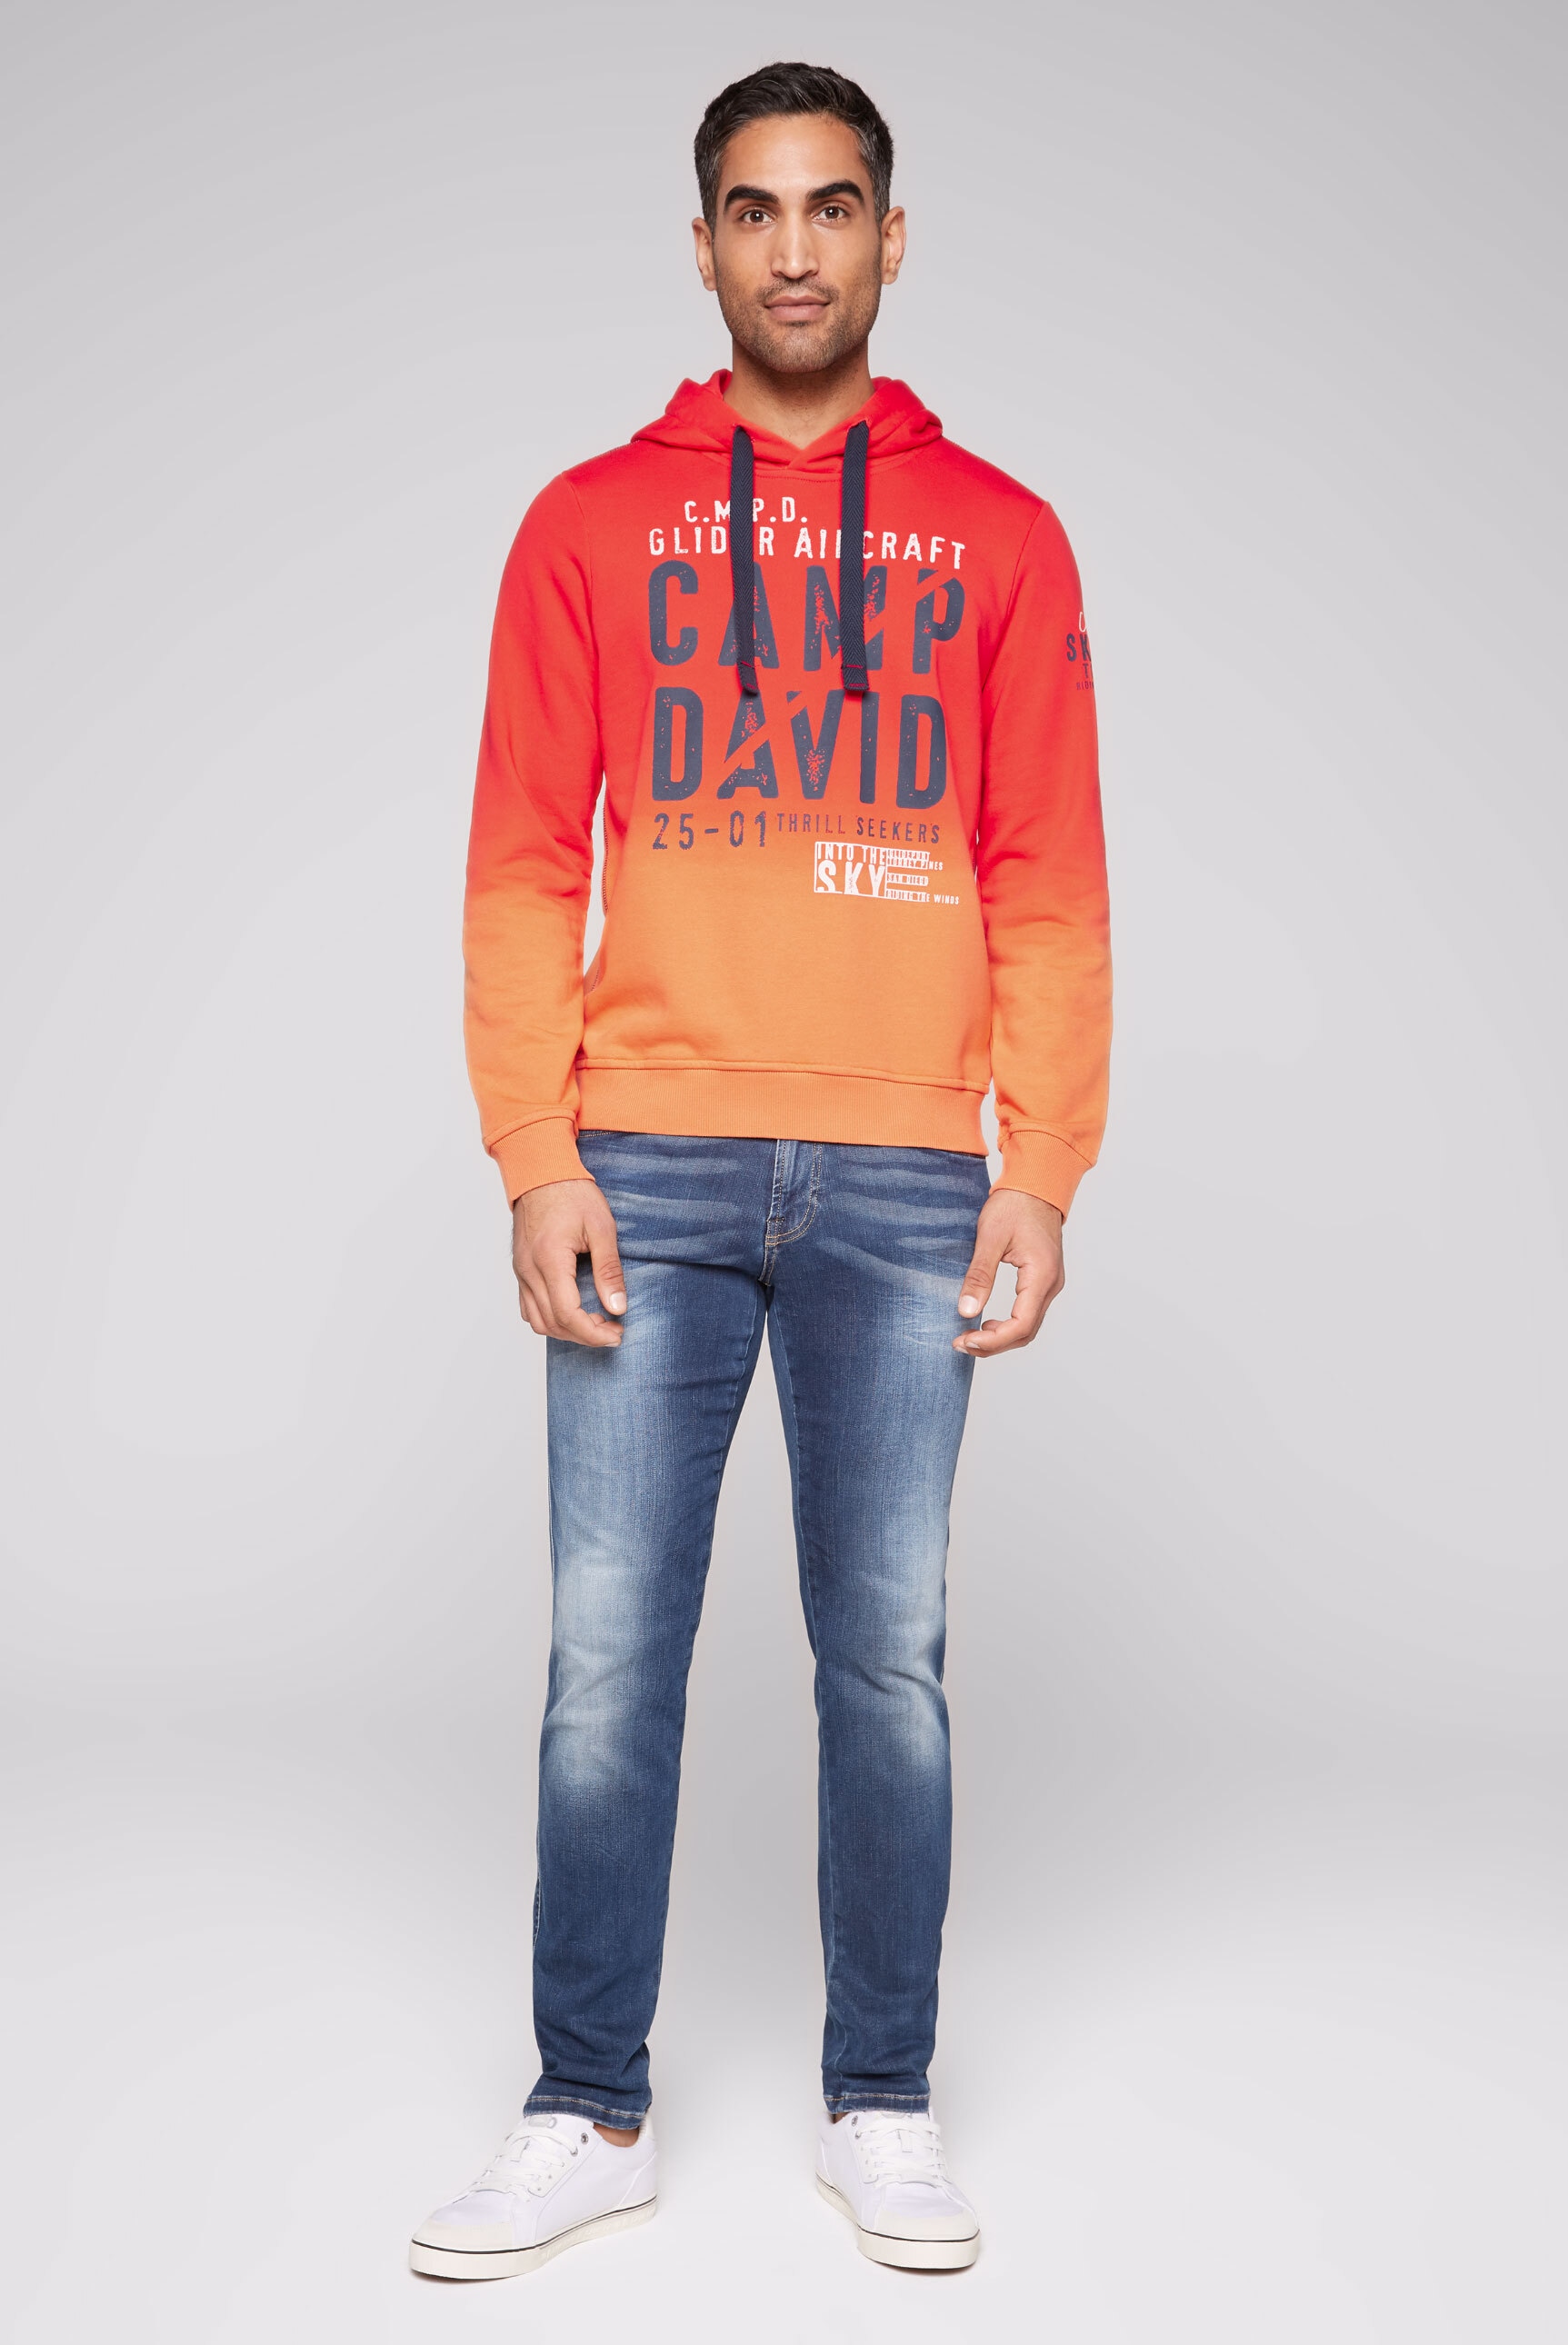 CAMP DAVID Farbverlauf kaufen online mit Kapuzensweatshirt,